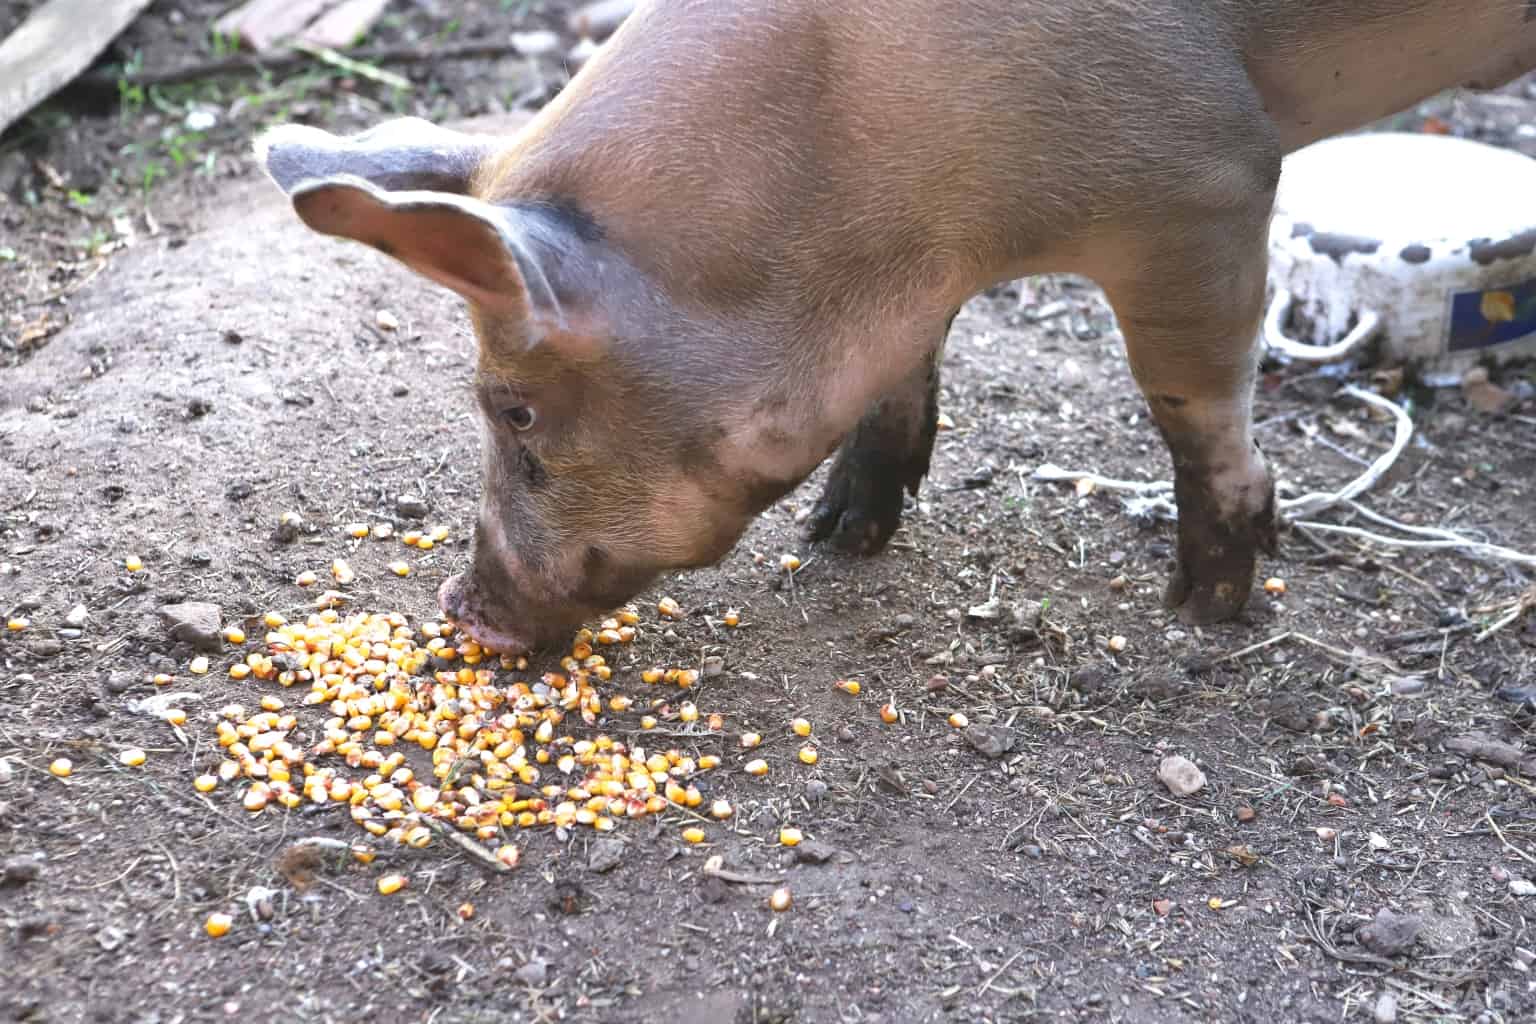 pig eating corn kernels